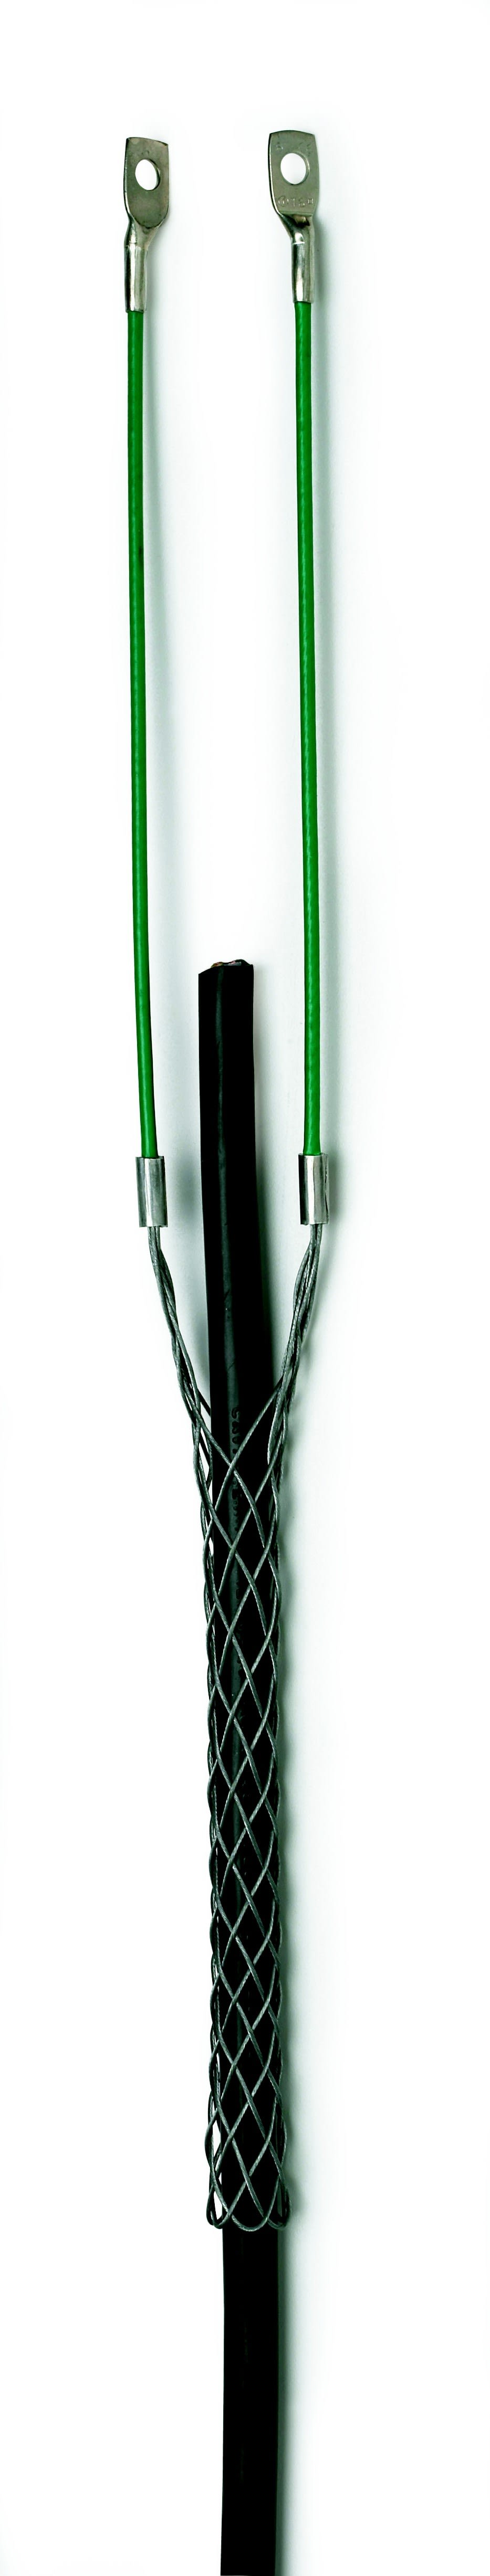 Cable Equipements - Chaussette de tirage acier galvanisé - Pour câble Ø 8 à 10mm